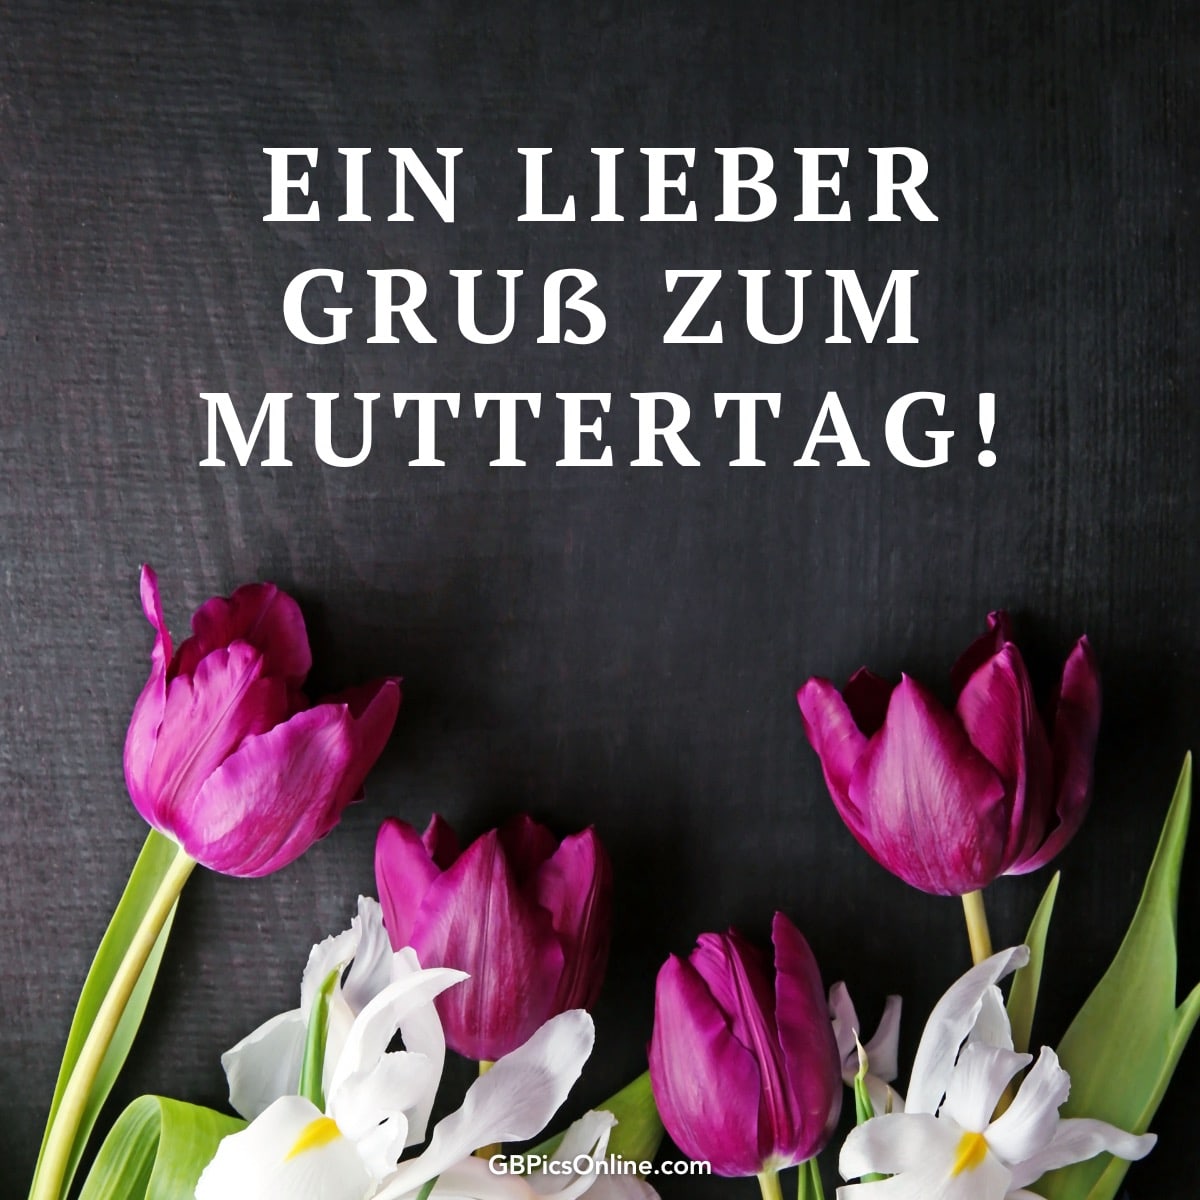 Lila und weiße Blumen mit dem Text „Ein lieber Gruß zum Muttertag!“ auf dunklem Hintergrund